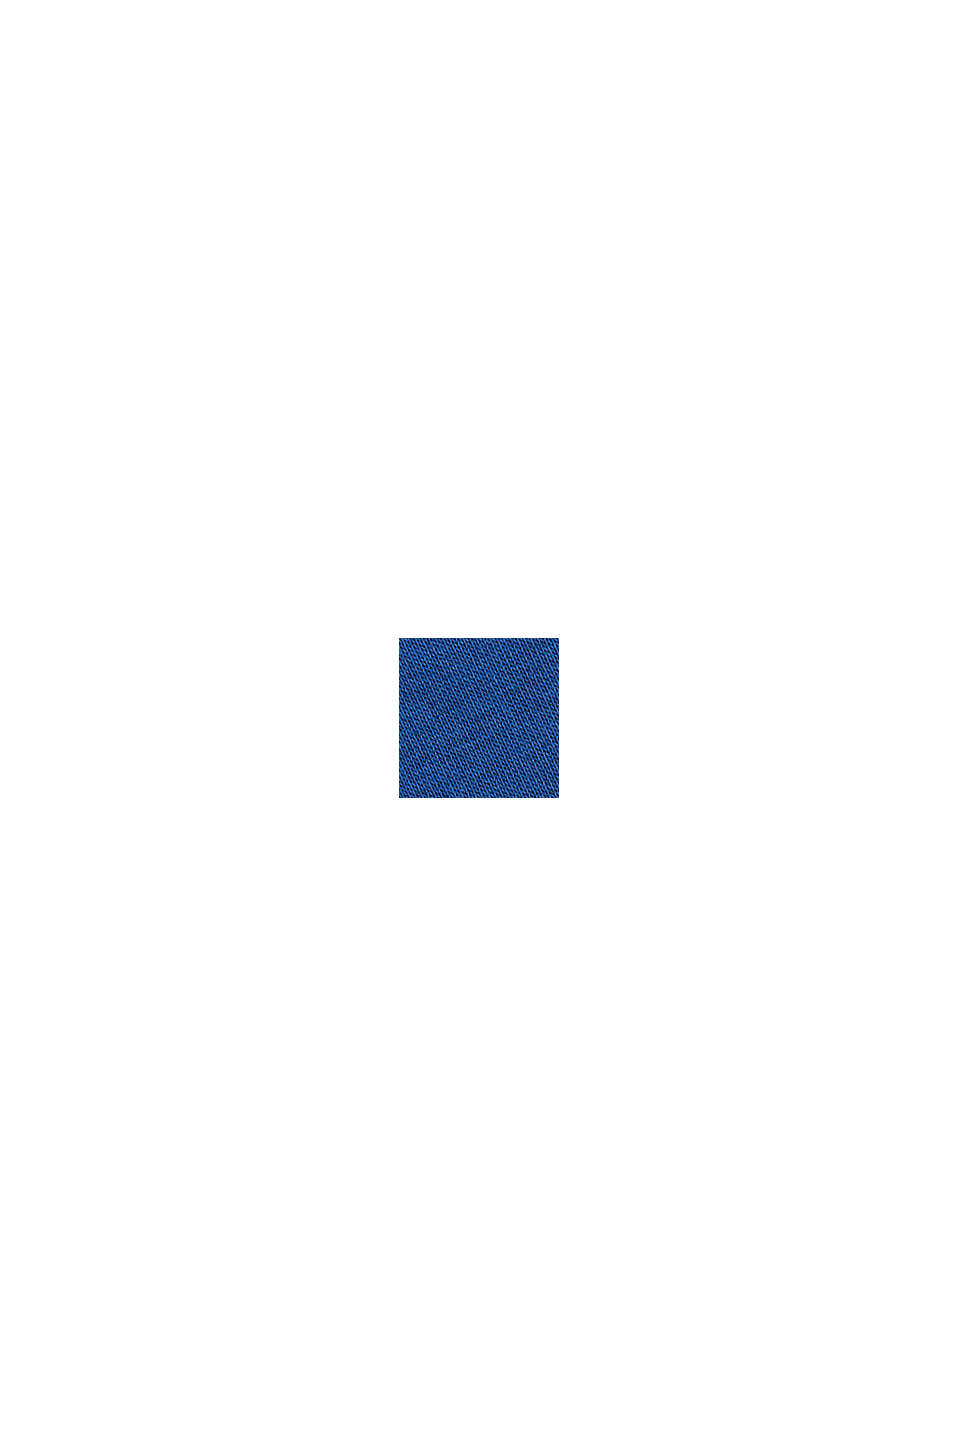 Bluza z wyhaftowanym logo, mieszanka bawełniana, BRIGHT BLUE, swatch